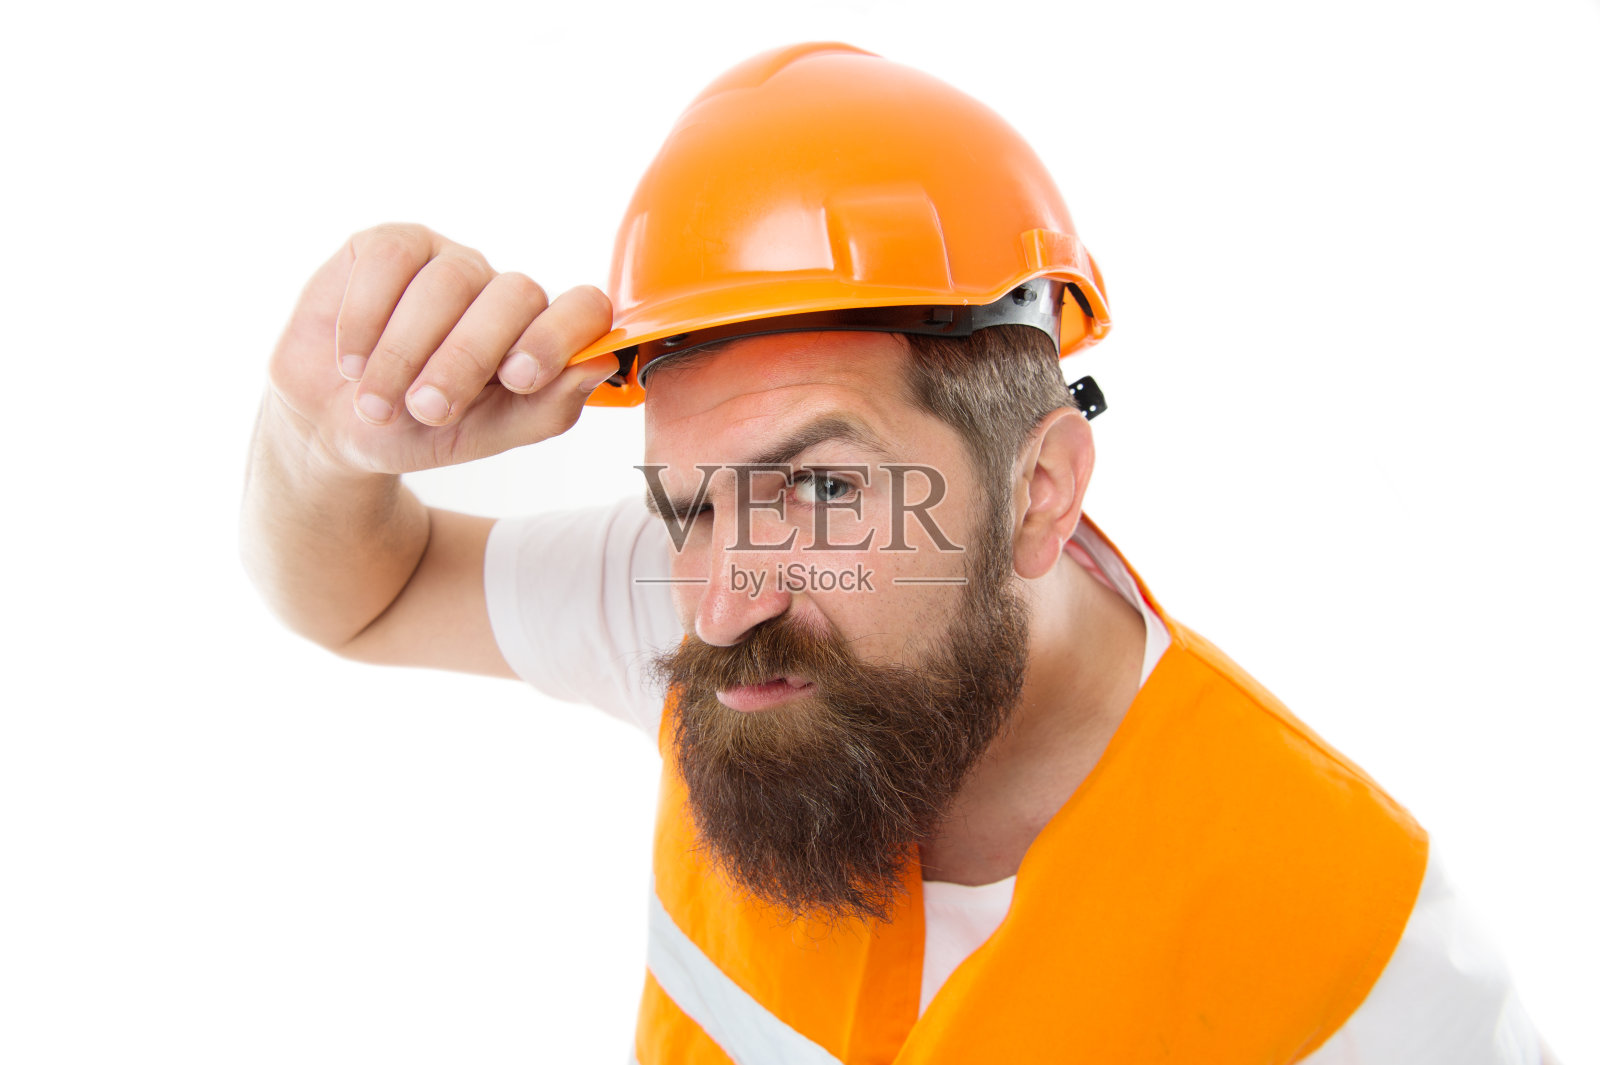 残忍和勤奋。野蛮的工人被白人孤立。长着胡子，一脸凶相的男人。建筑工人或建筑商应戴上安全帽及安全背心。残酷的工作照片摄影图片